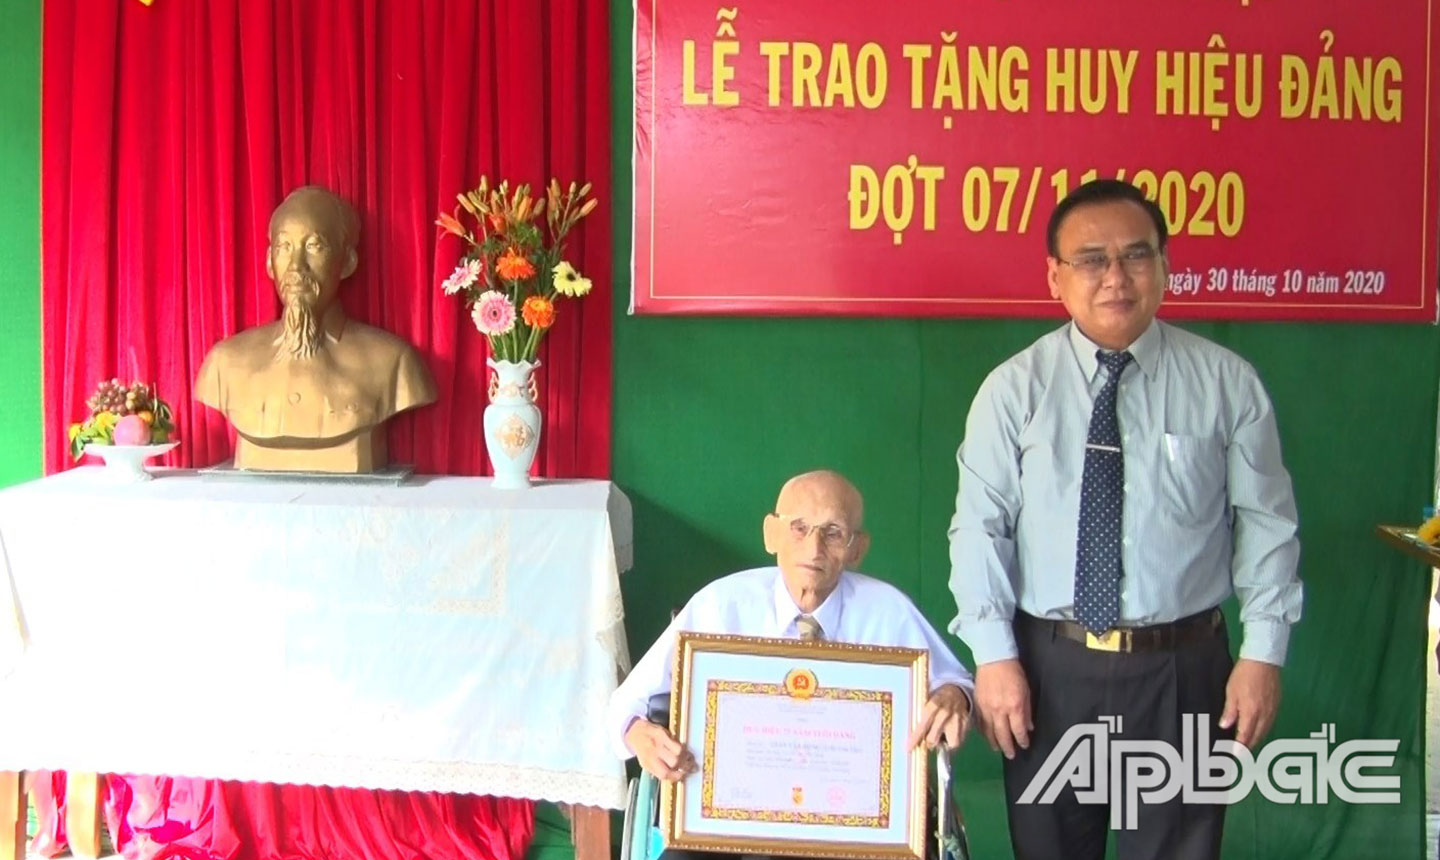 Đồng chí Võ Văn Bình trao Huy hiệu 75 năm tuổi Đảng cho đồng chí Trần Văn Hồng.